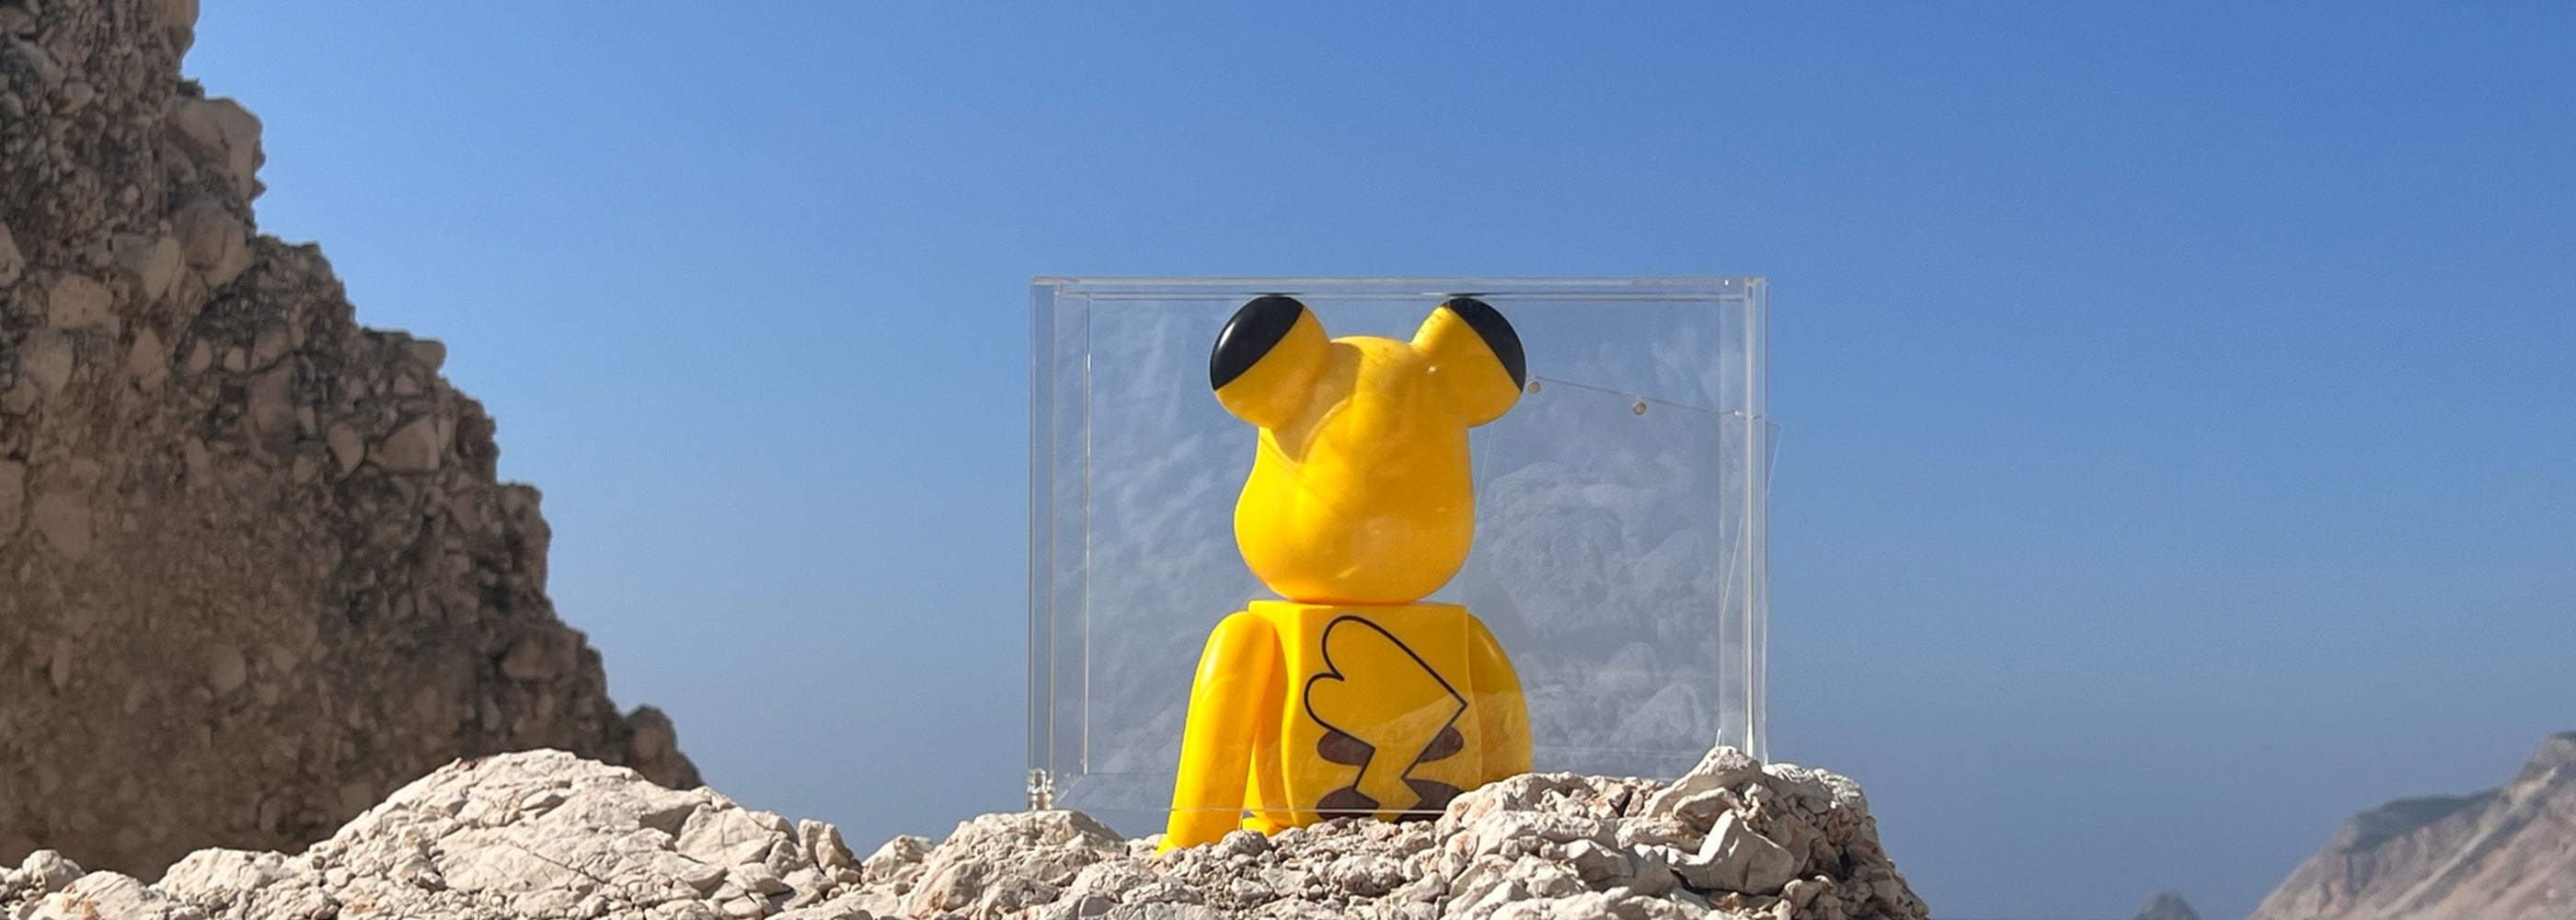 Pikachu in acryl case op rots voor uv-bescherming